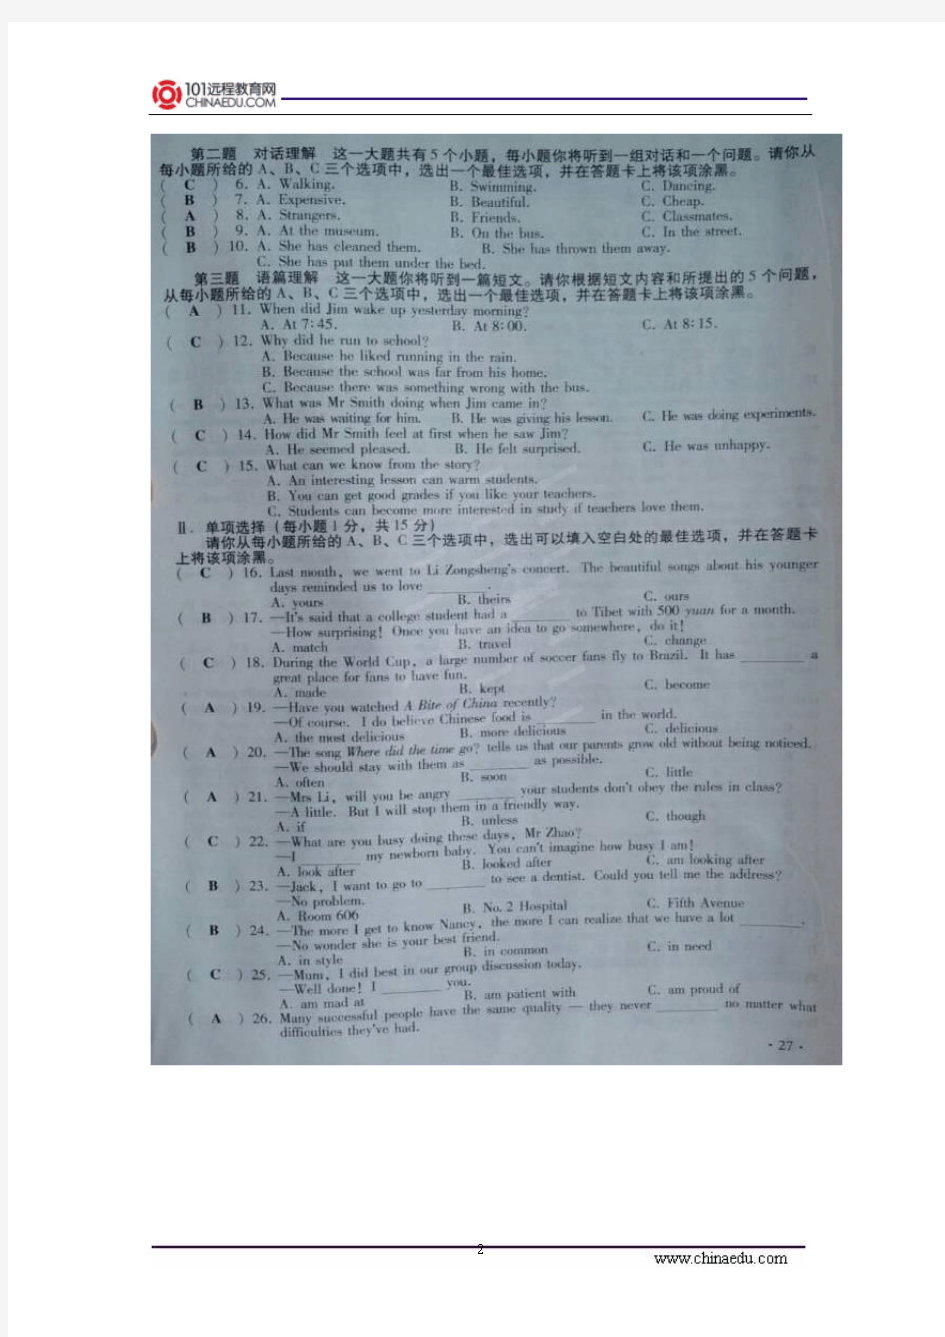 2014年山西省高中阶段教育学校招生统一考试英语试卷(图片版)